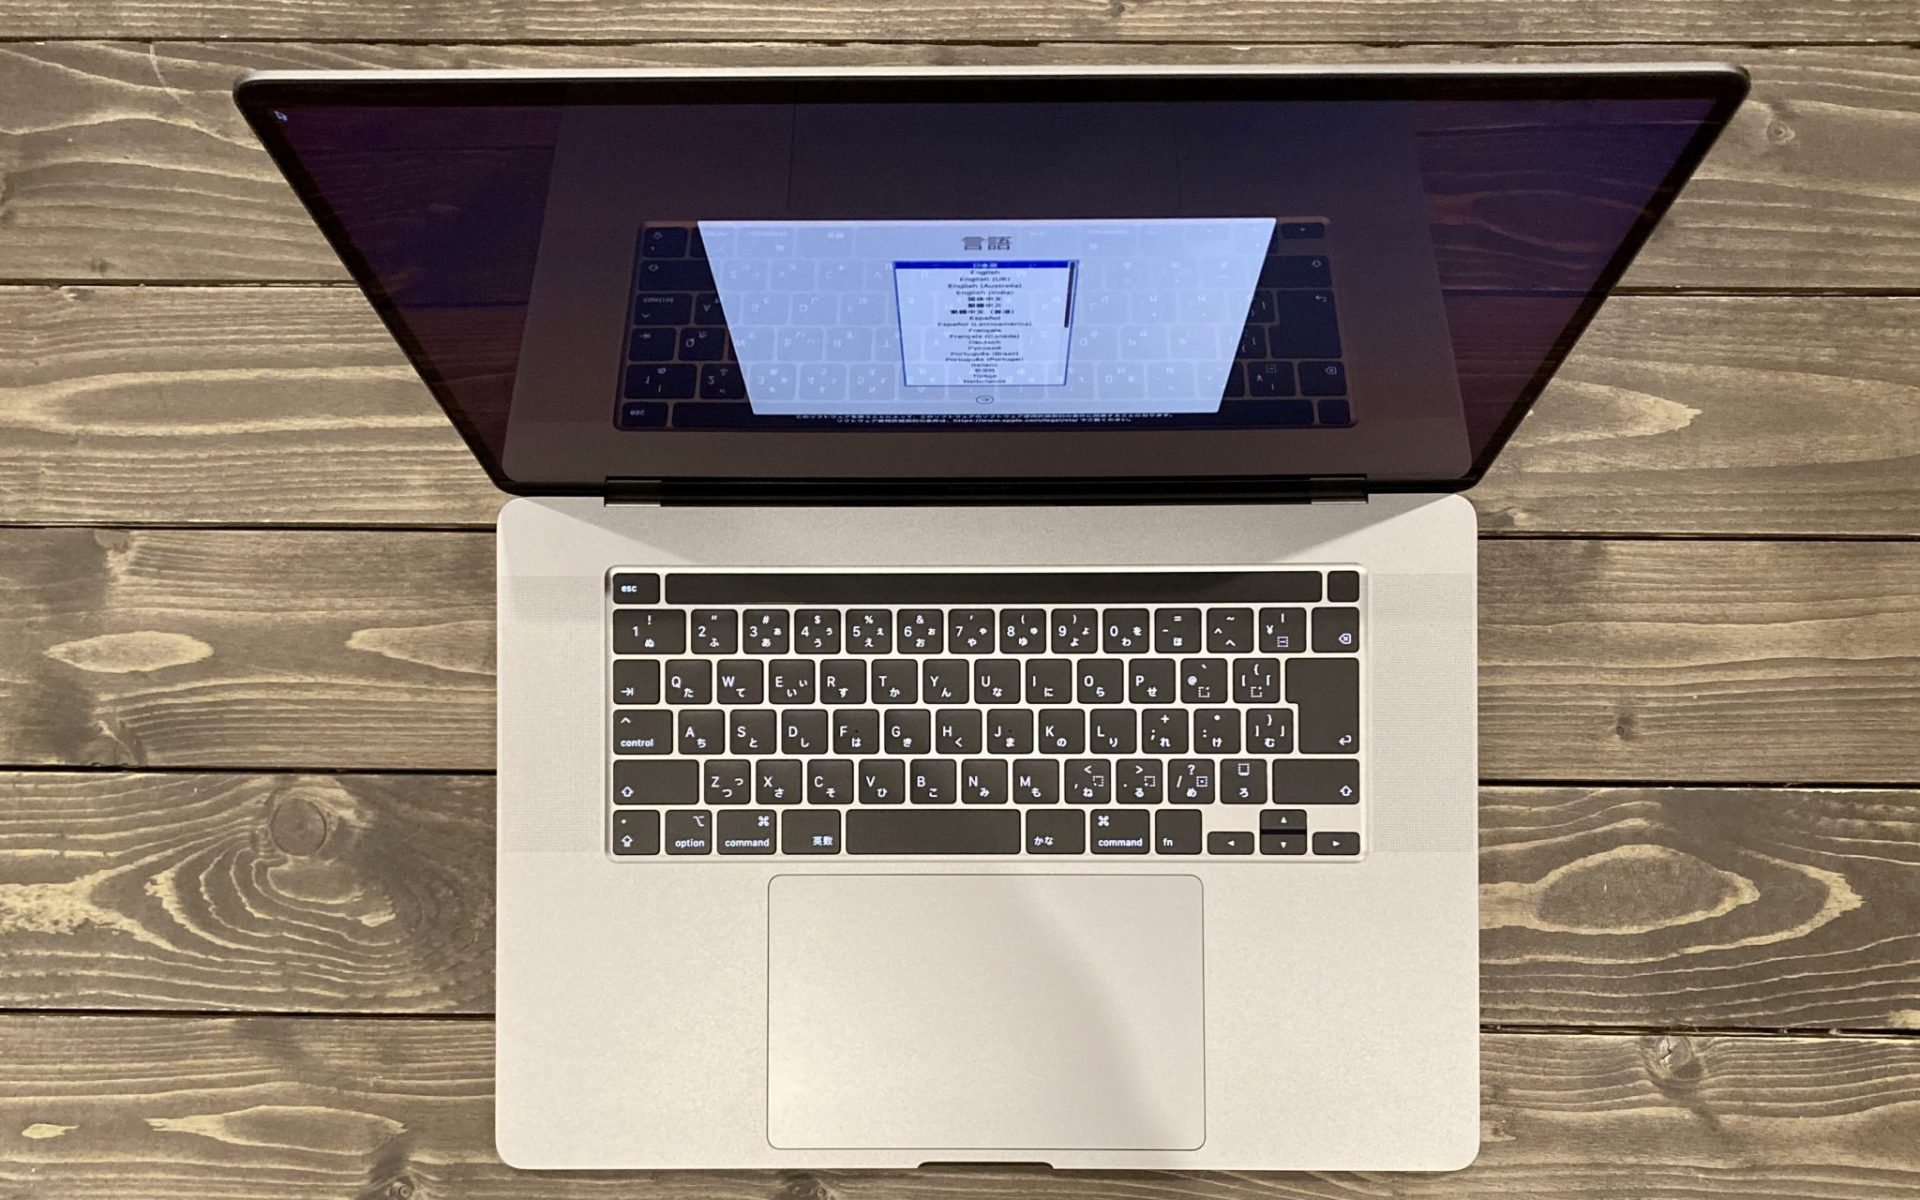 MacBook Pro 16 2019